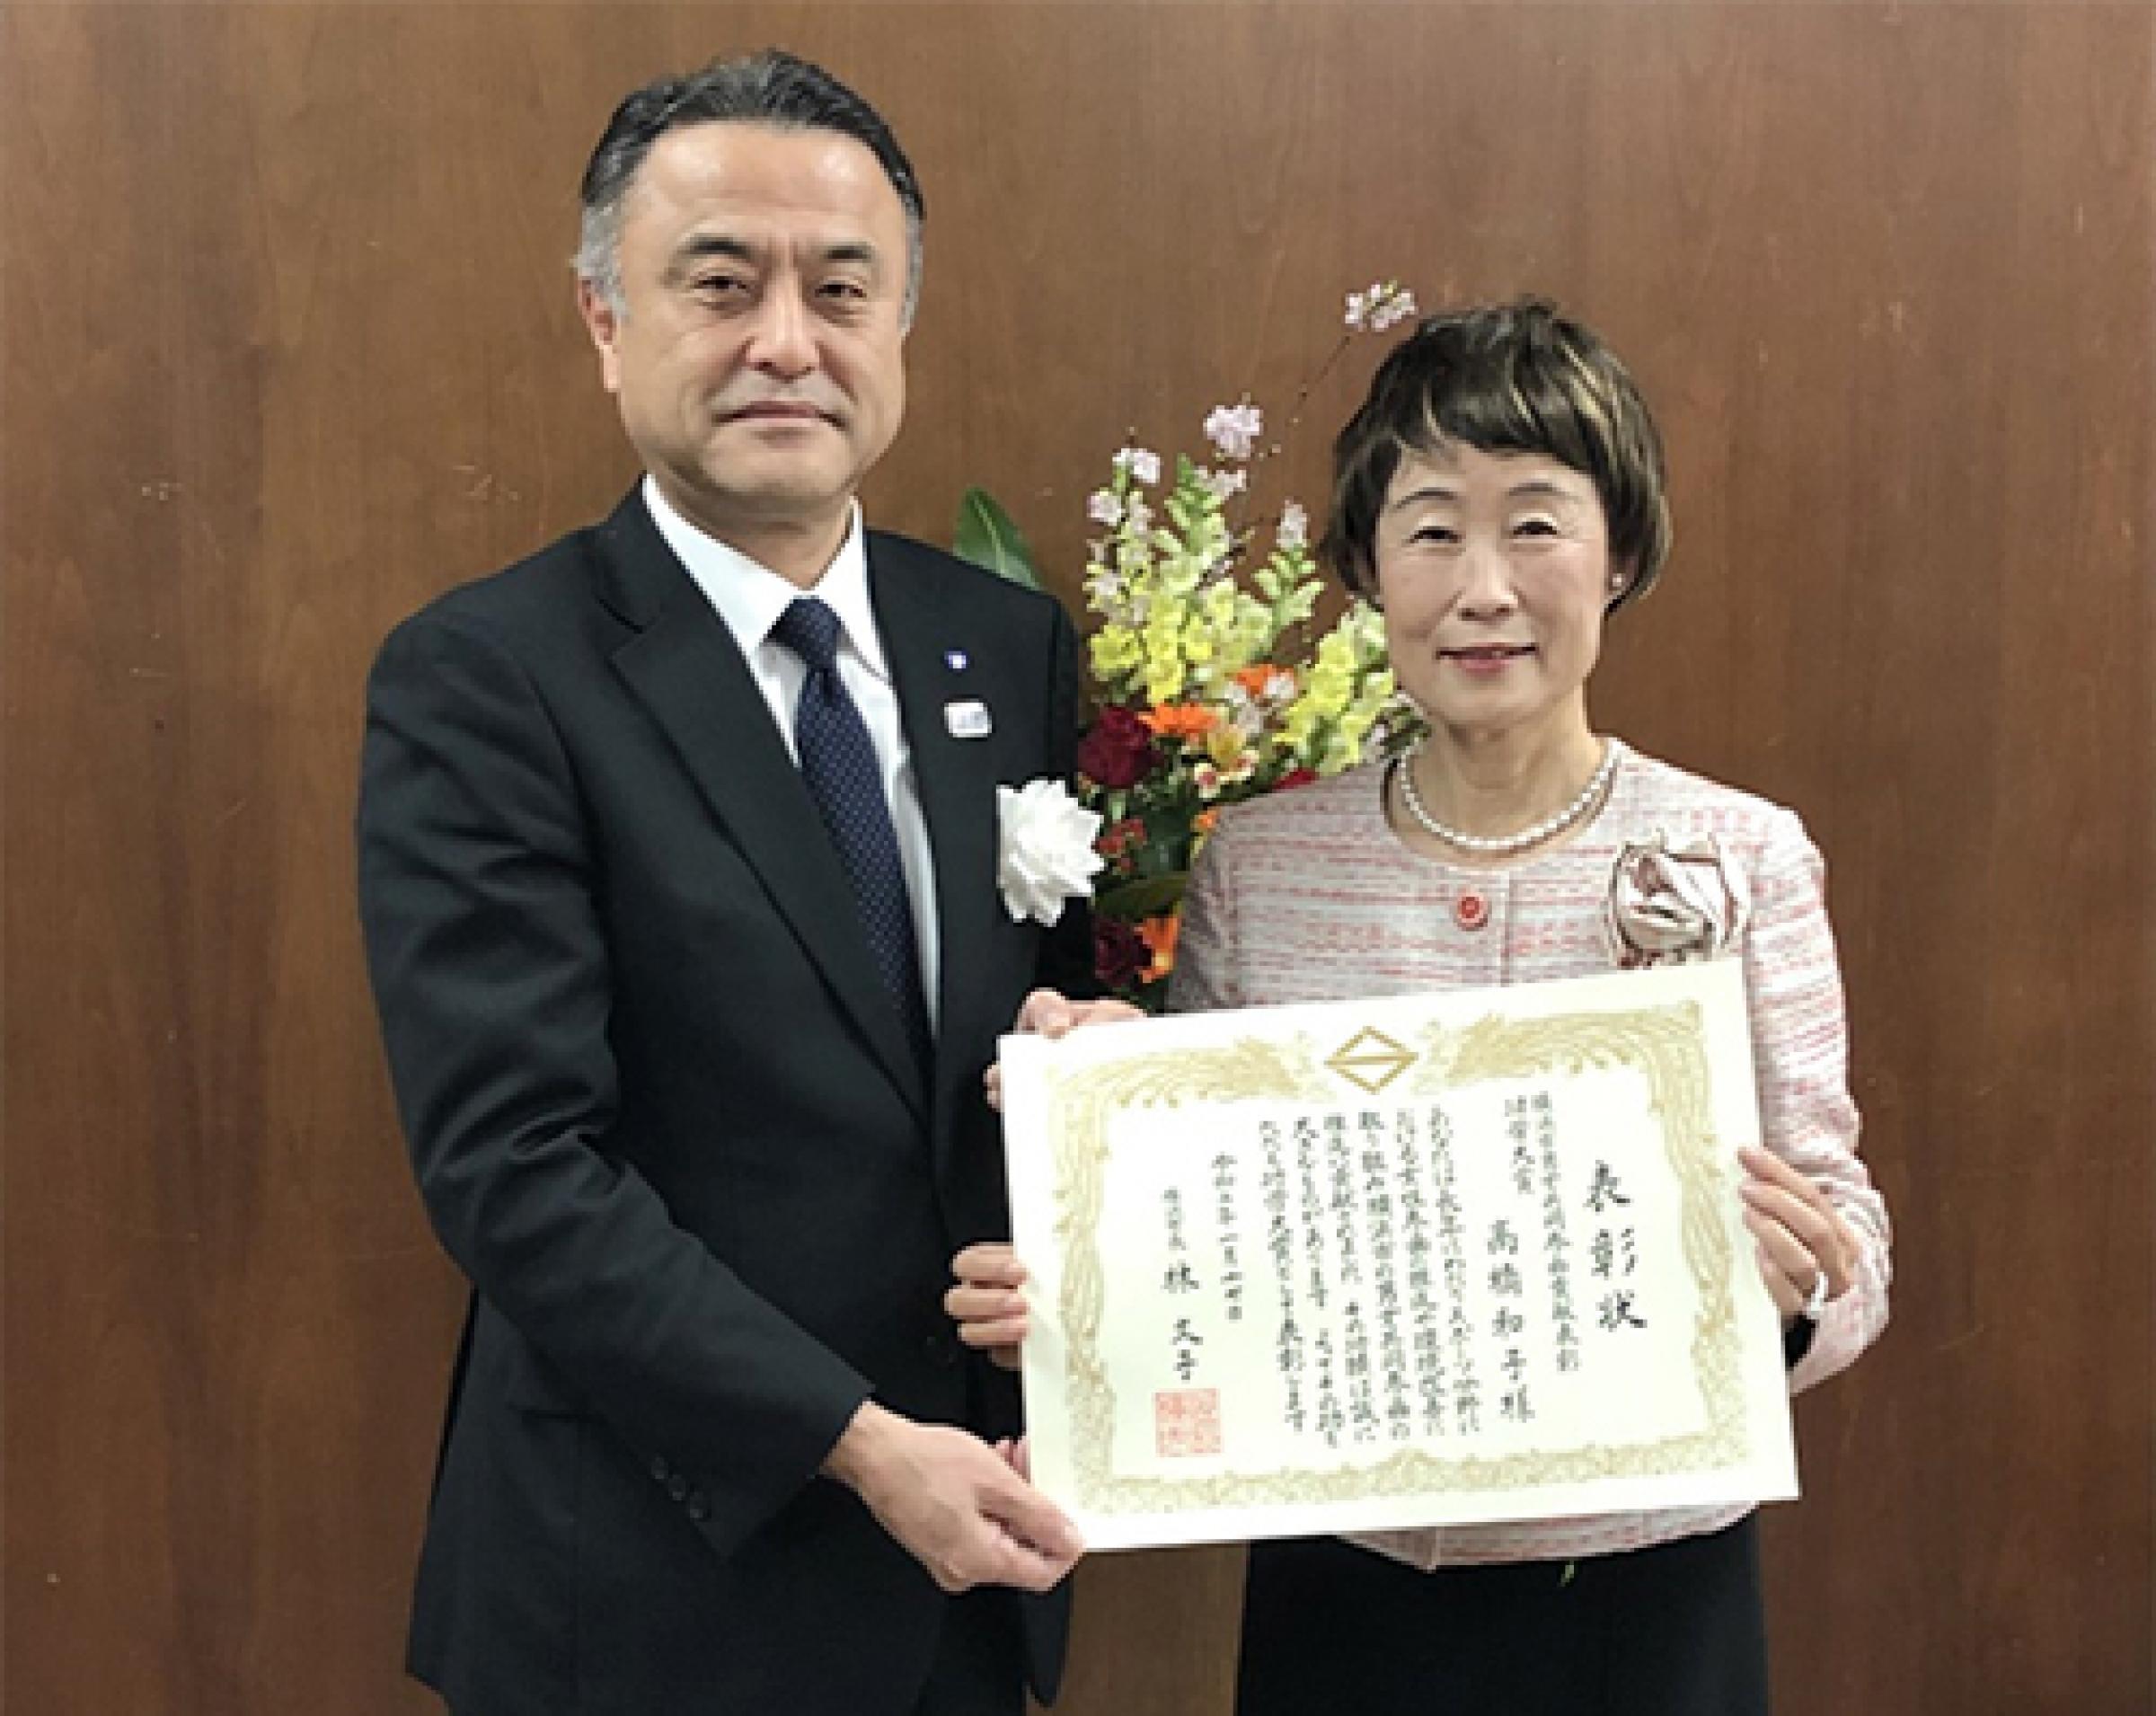 静岡産業大学の高橋和子教授が横浜市男女共同参画貢献表彰「功労大賞」を受賞 -- 女性アスリートの競技力向上に尽力した功績が評価